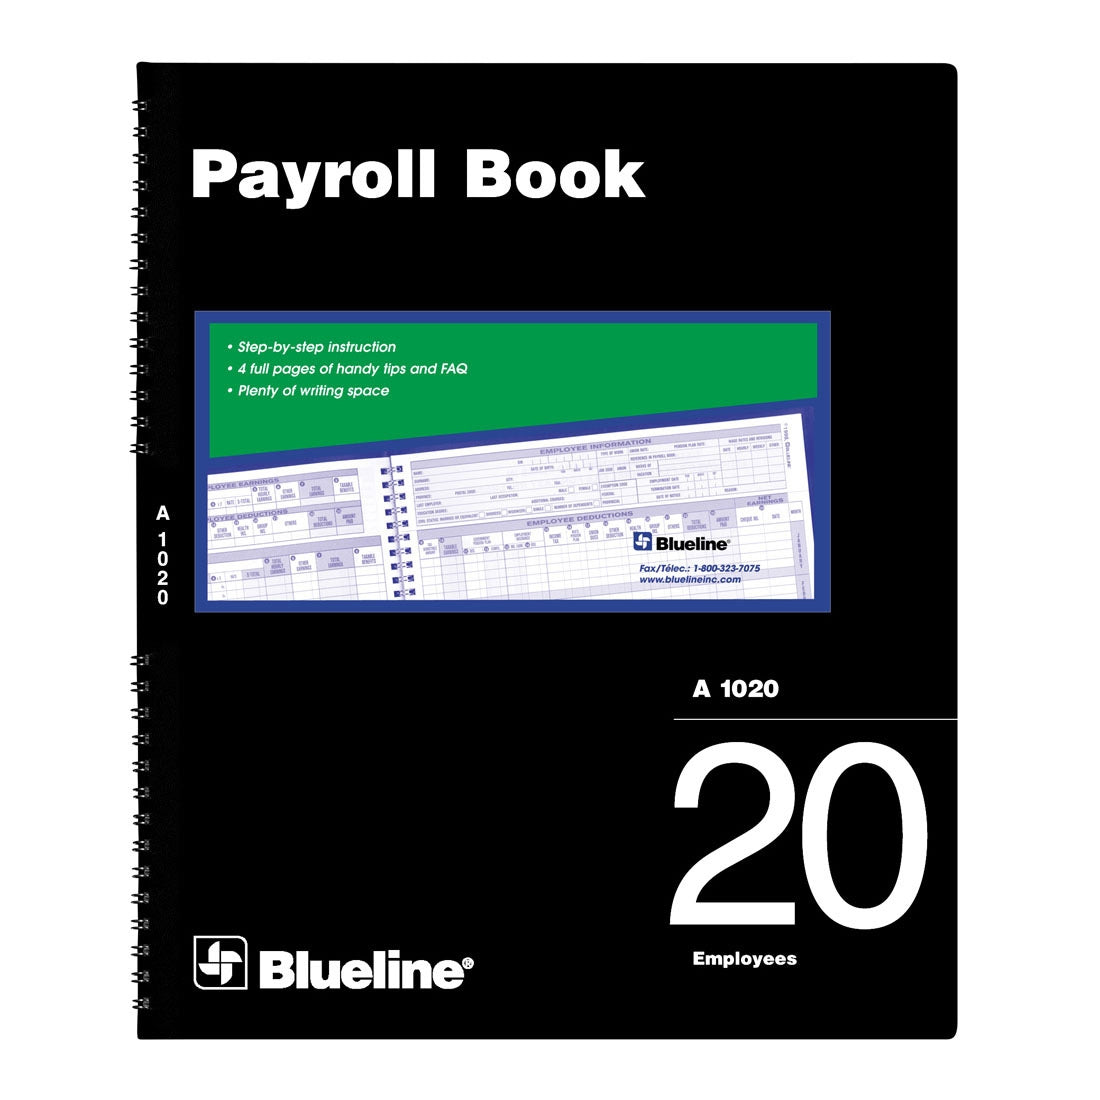 Payroll Book, 20 Employees, A1020